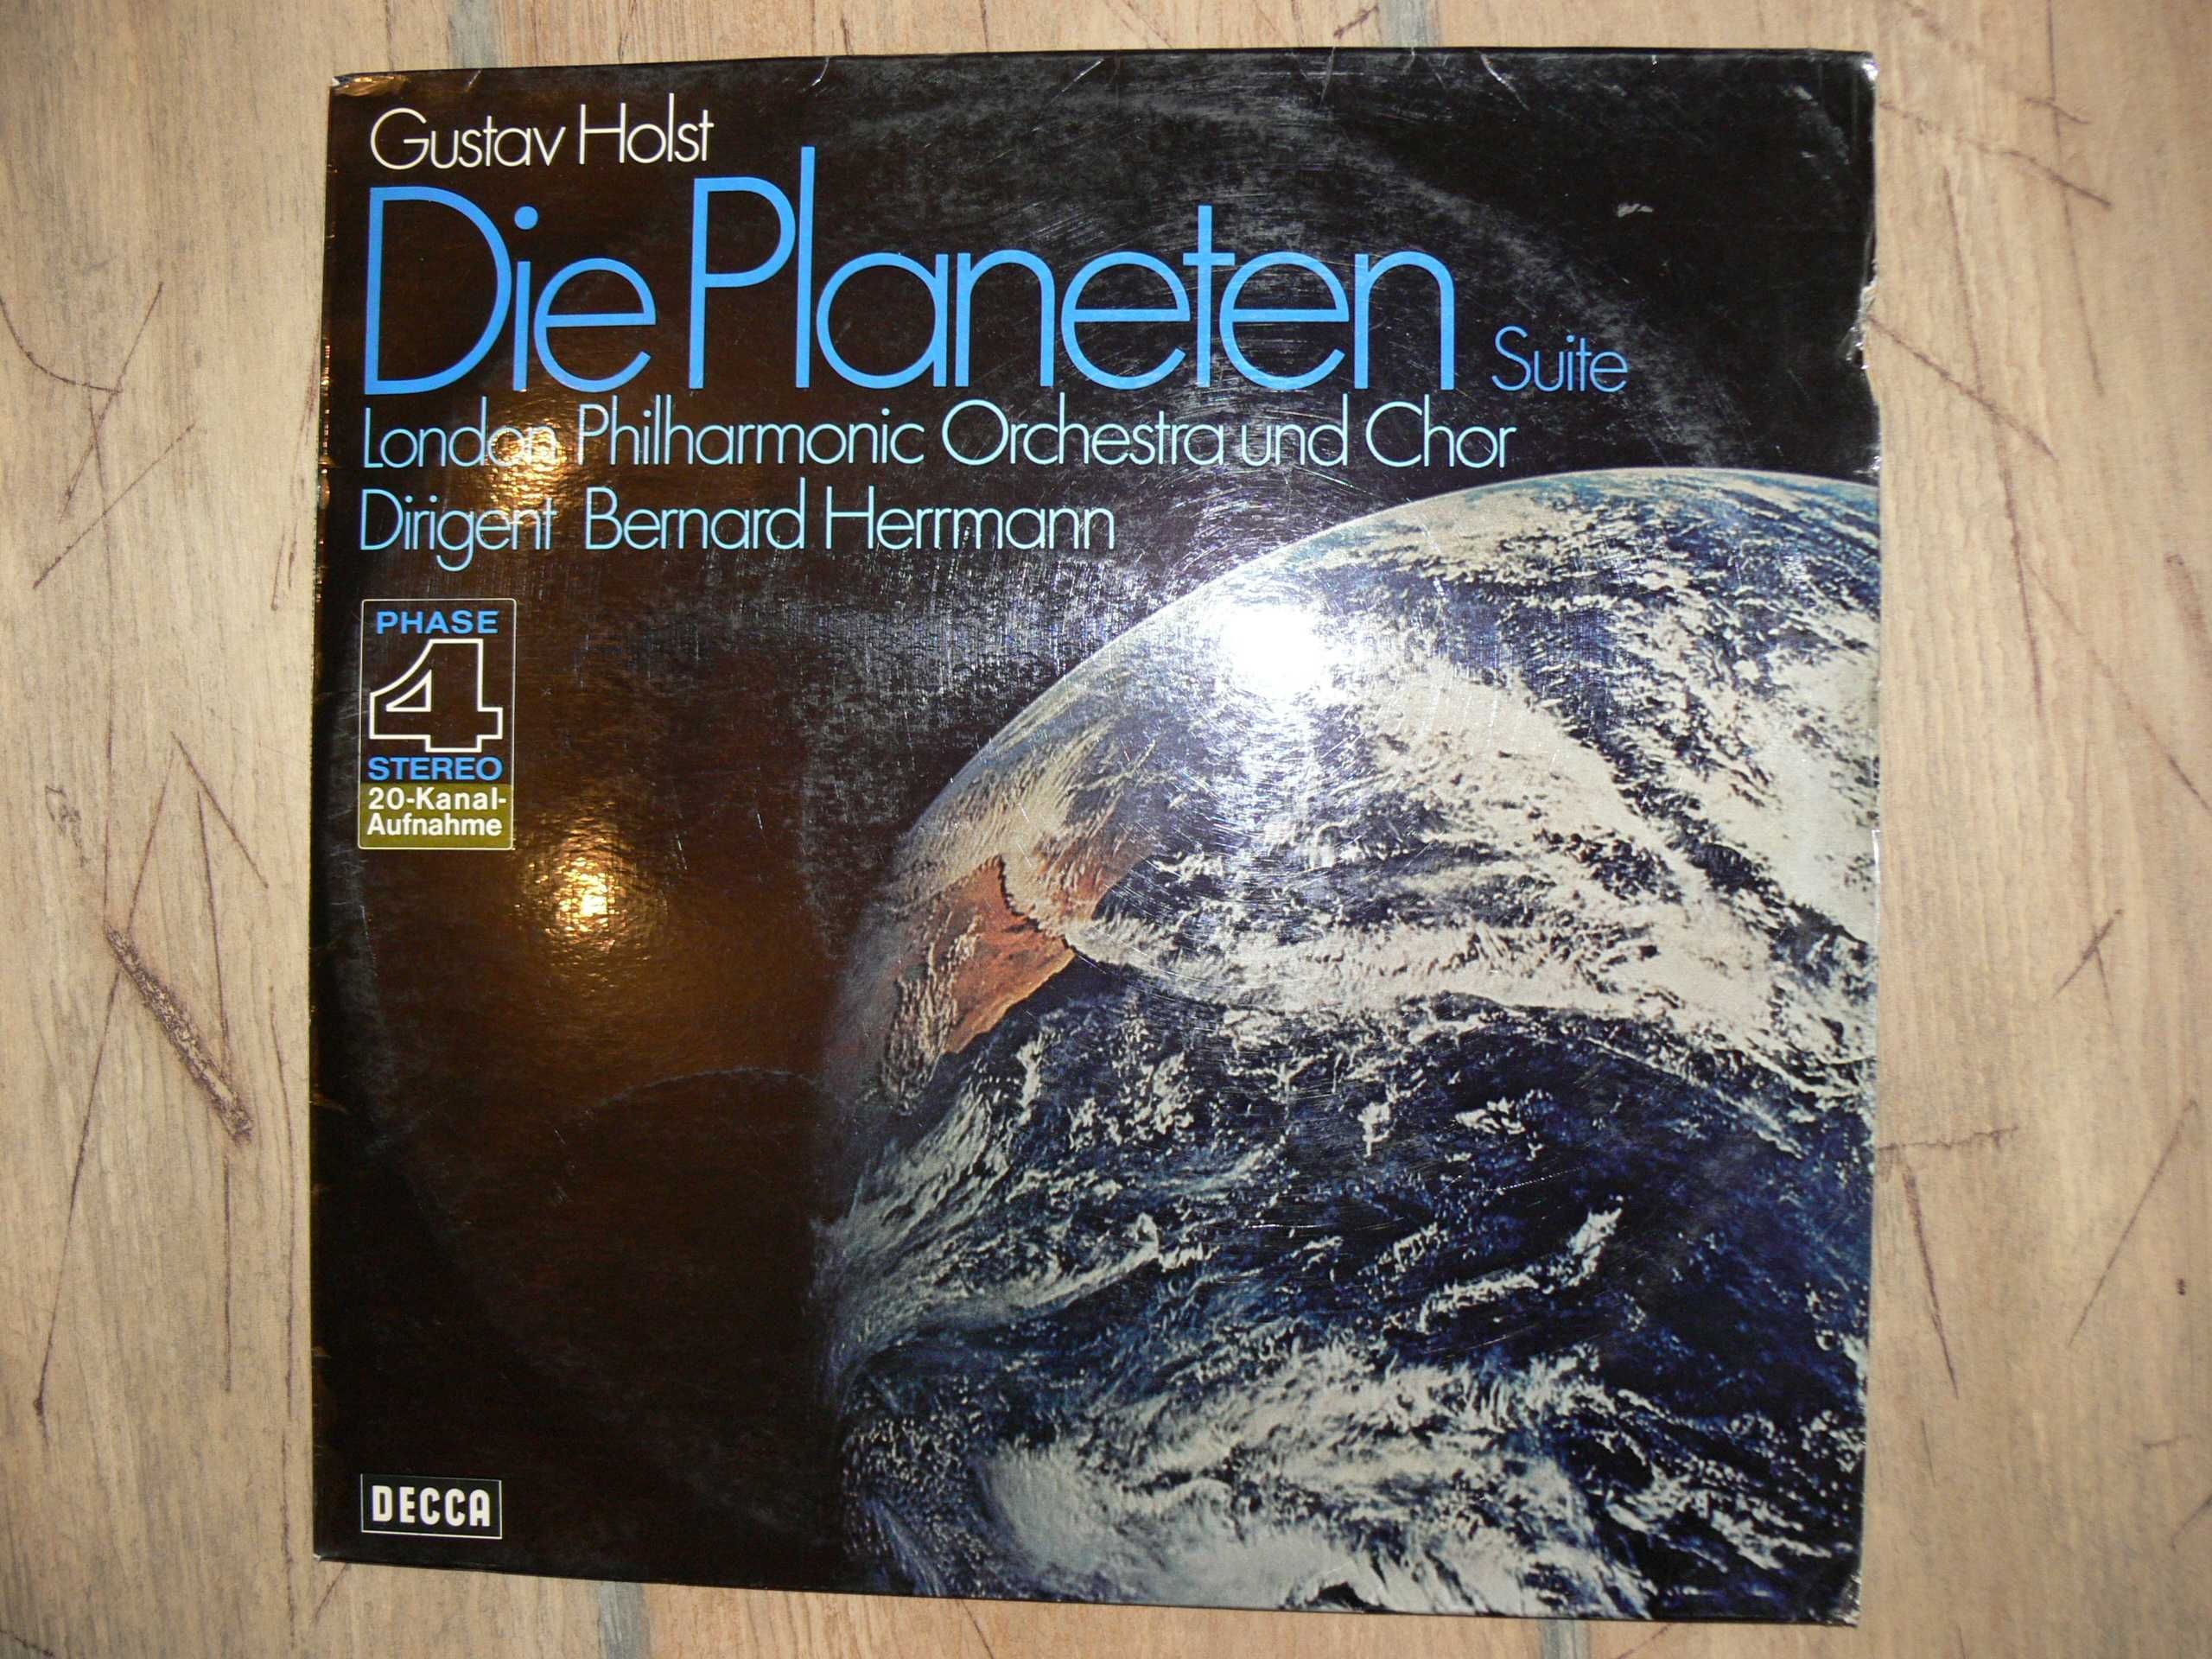 Płyta Winylowa Gustava Holsta - Die Planeten  London Philharmonic